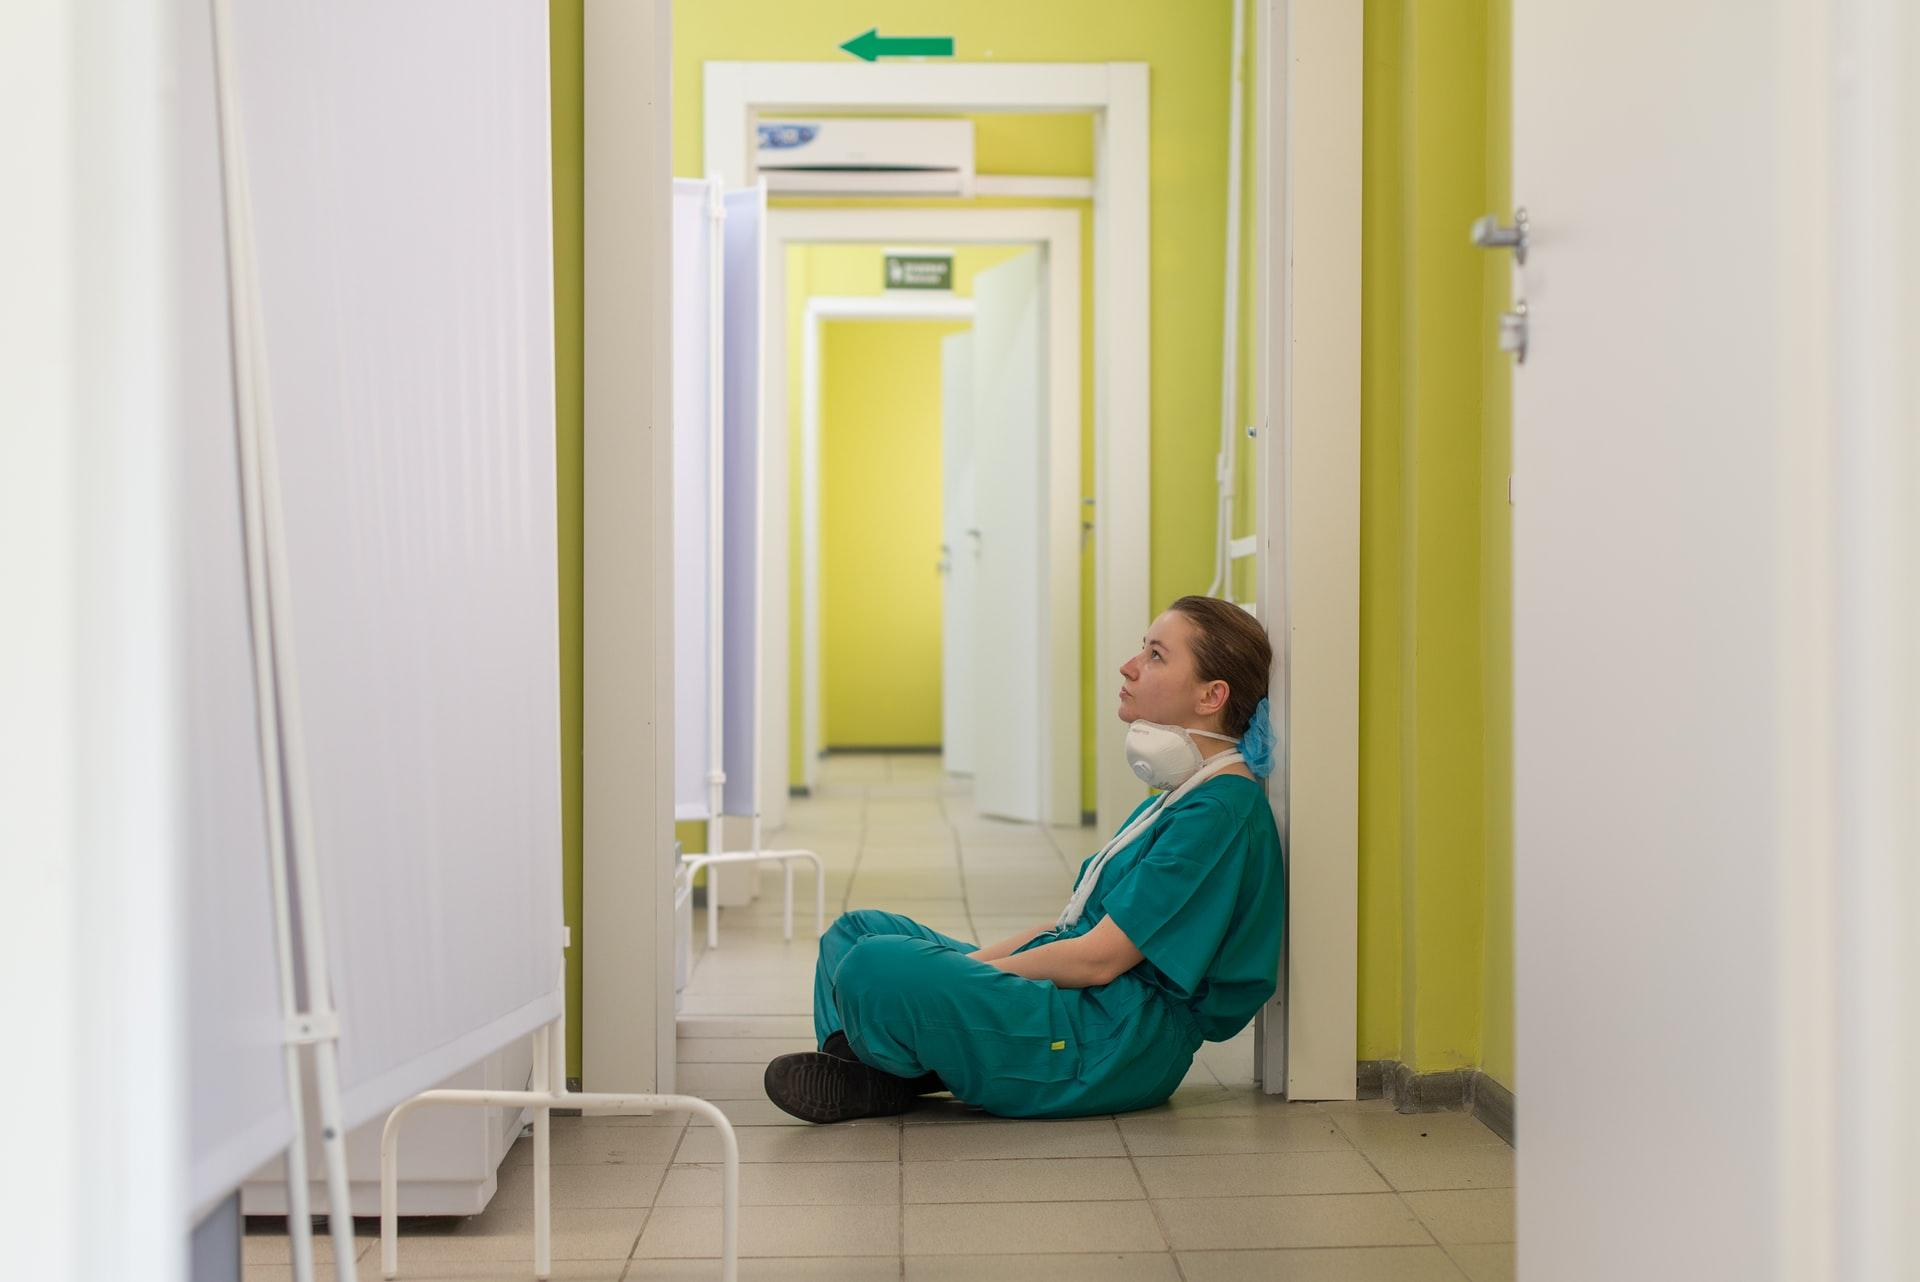 Снова в Украине больше инфицирований коронавирусом, чем выздоровлений